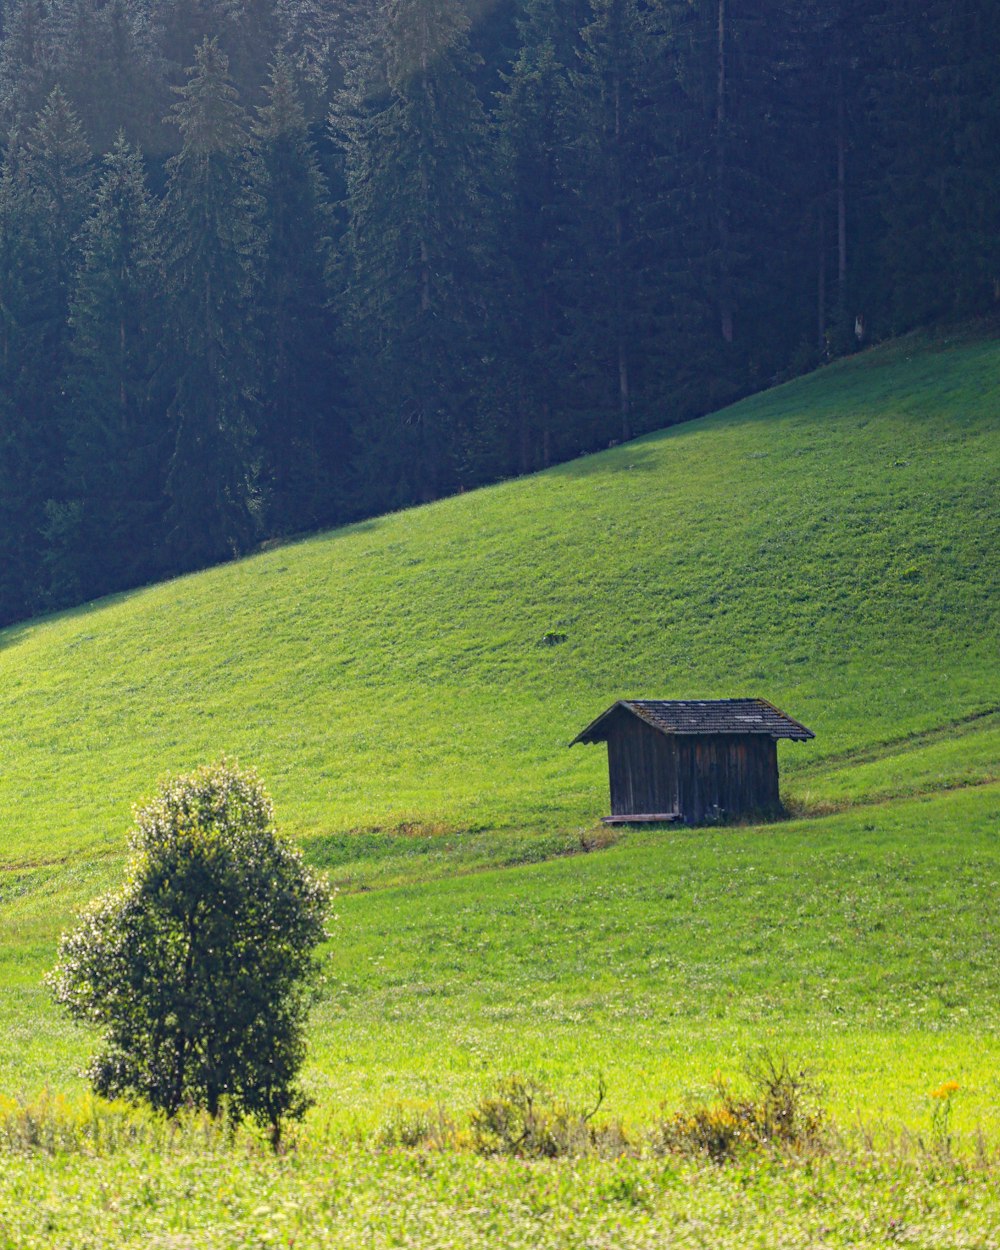 une petite cabane sur une colline herbeuse